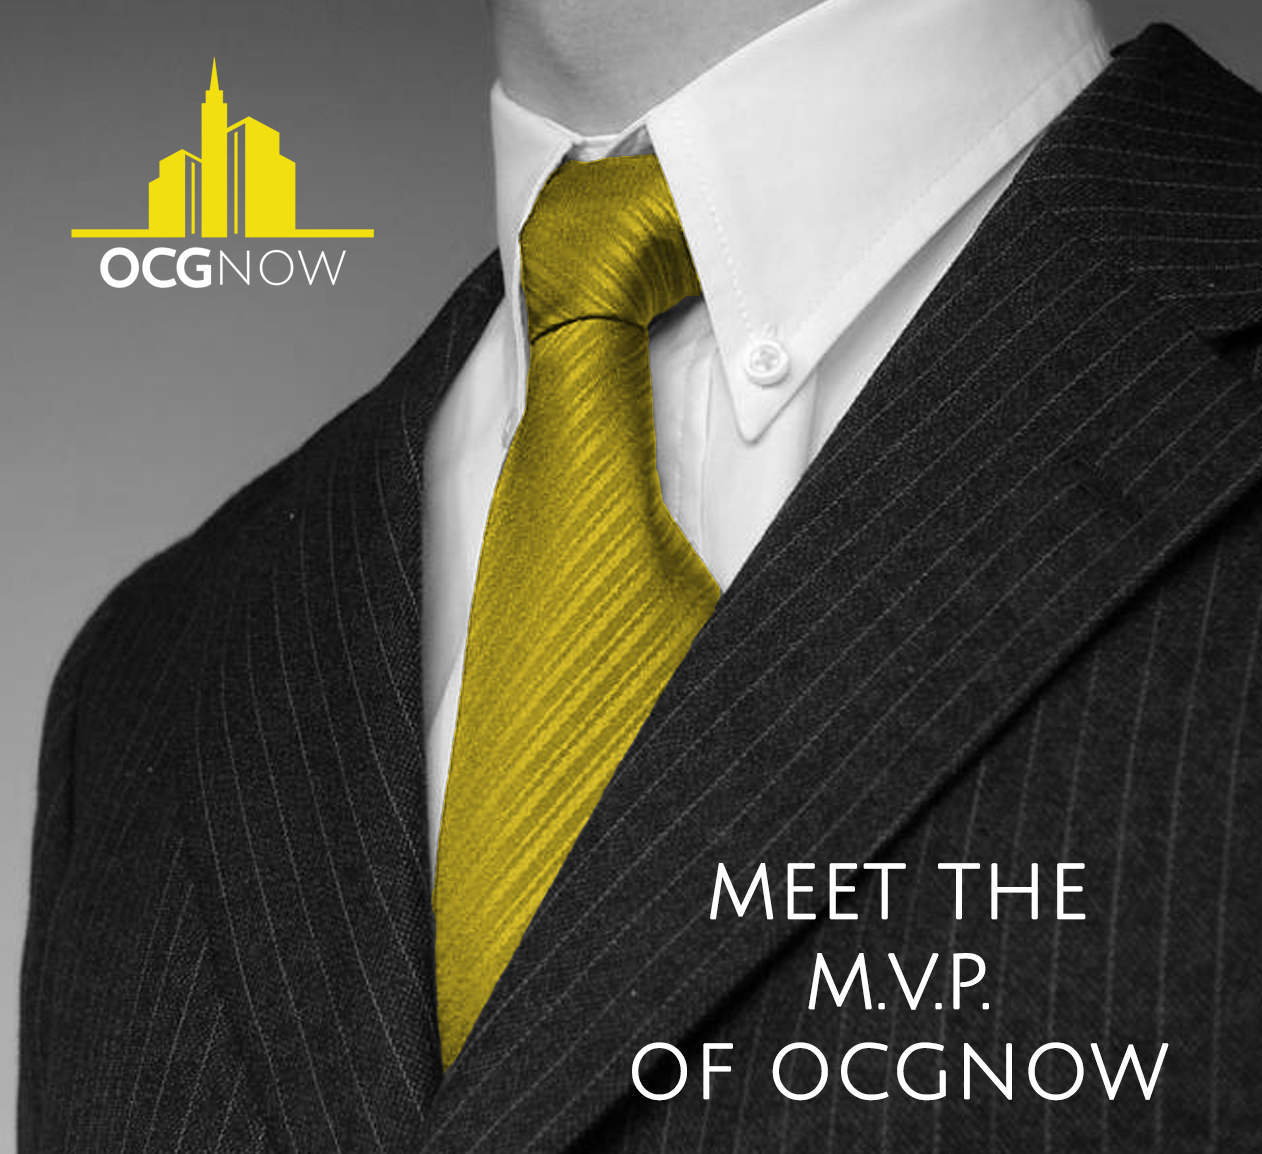 Businessman suit and tie MVP explains OCGnow mission statement